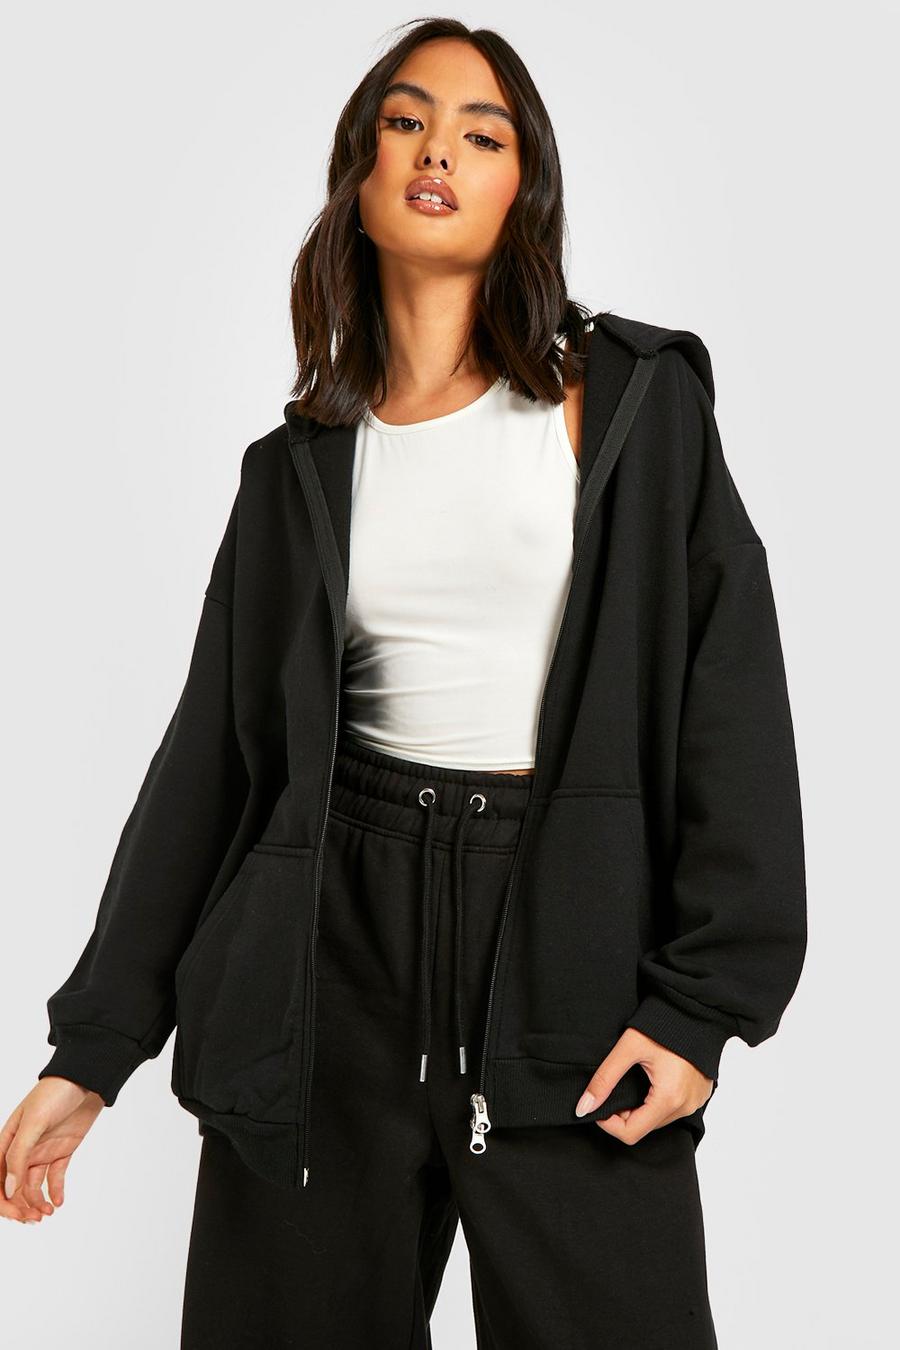 Sweat à capuche hoodie oversize noir femme